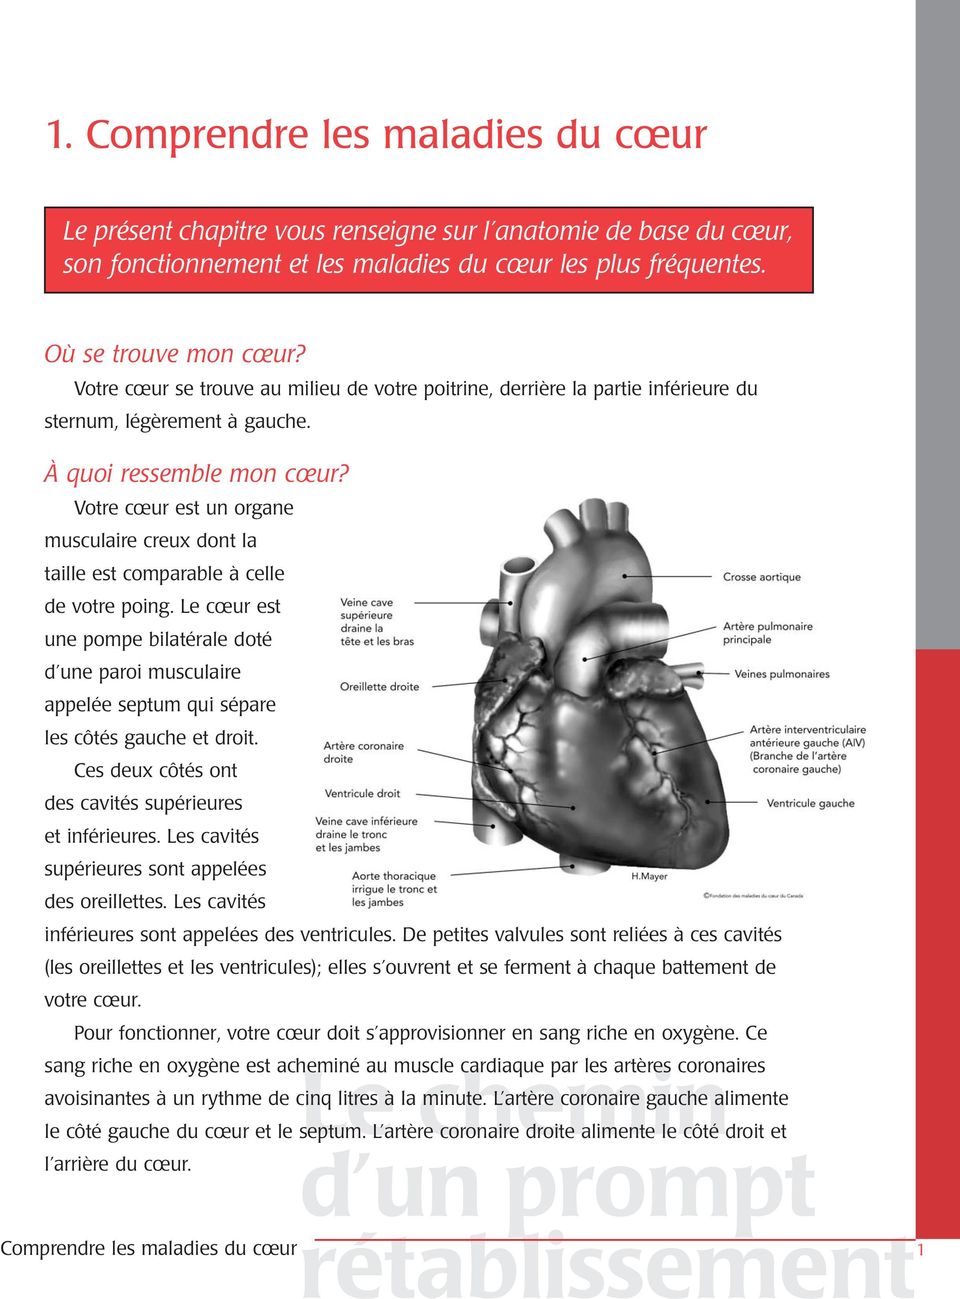 Votre cœur est un organe musculaire creux dont la taille est comparable à celle de votre poing.